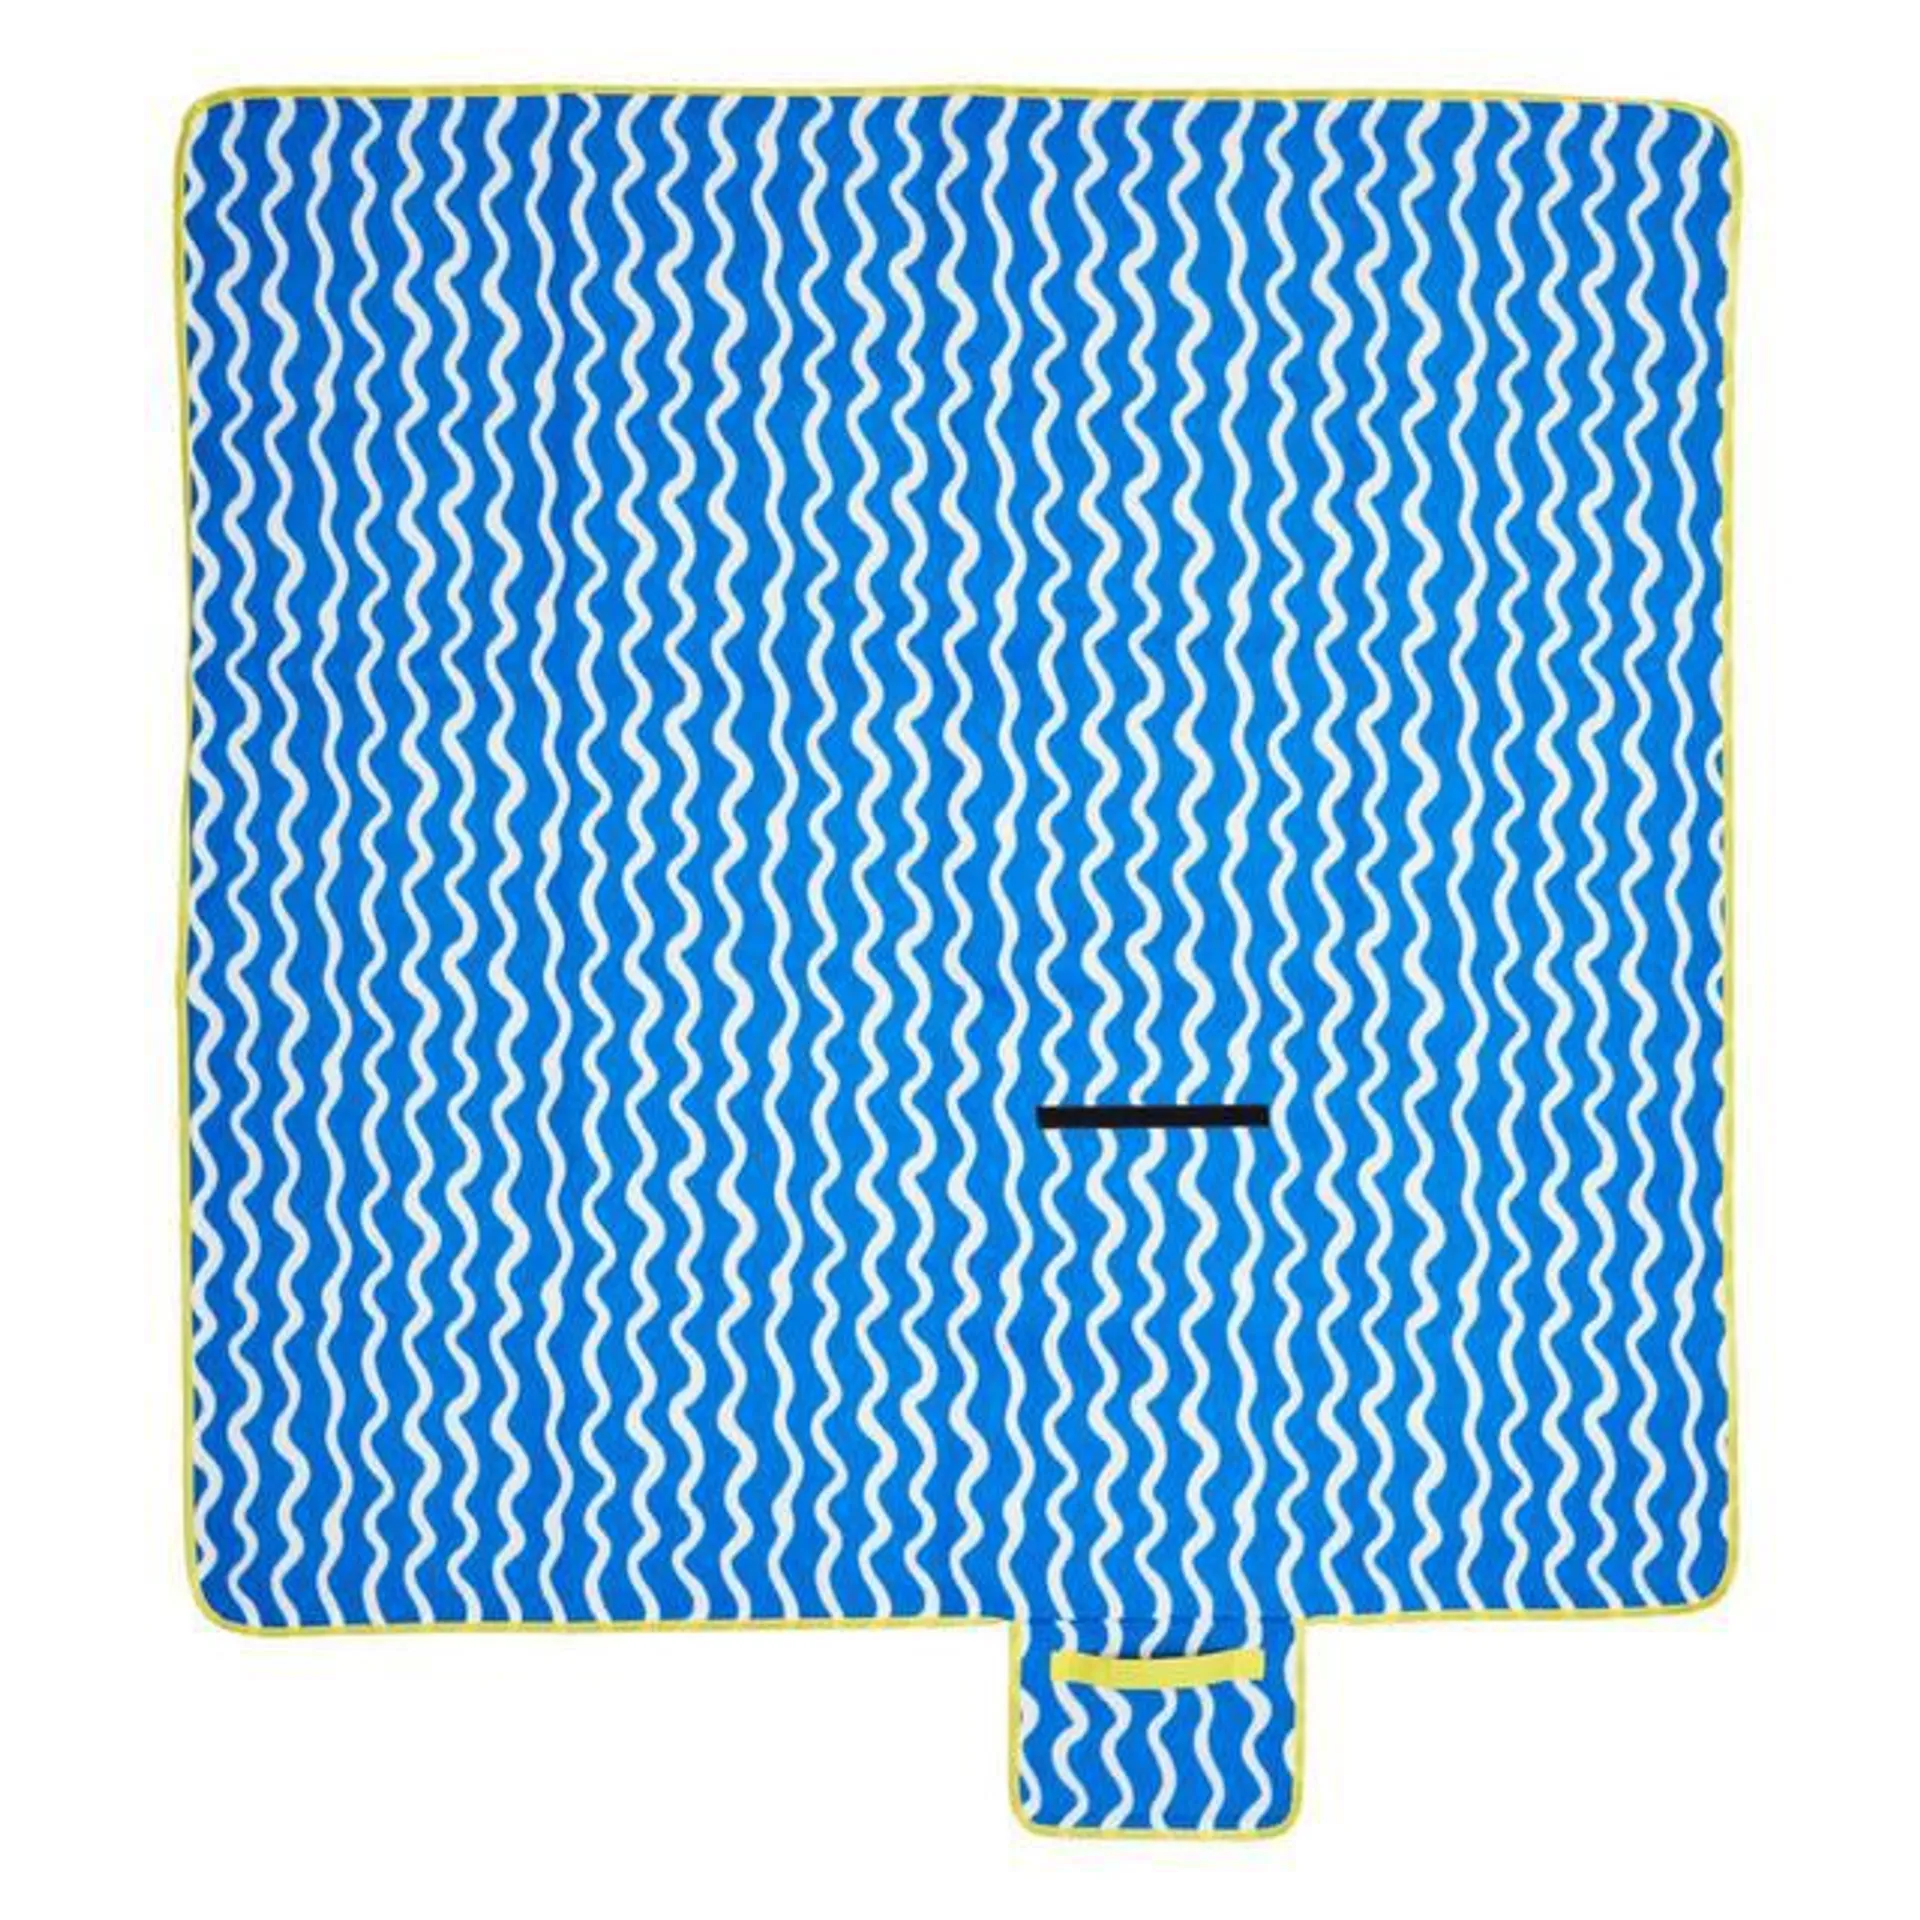 M&S Picnic Blanket, 1SIZE, Multi